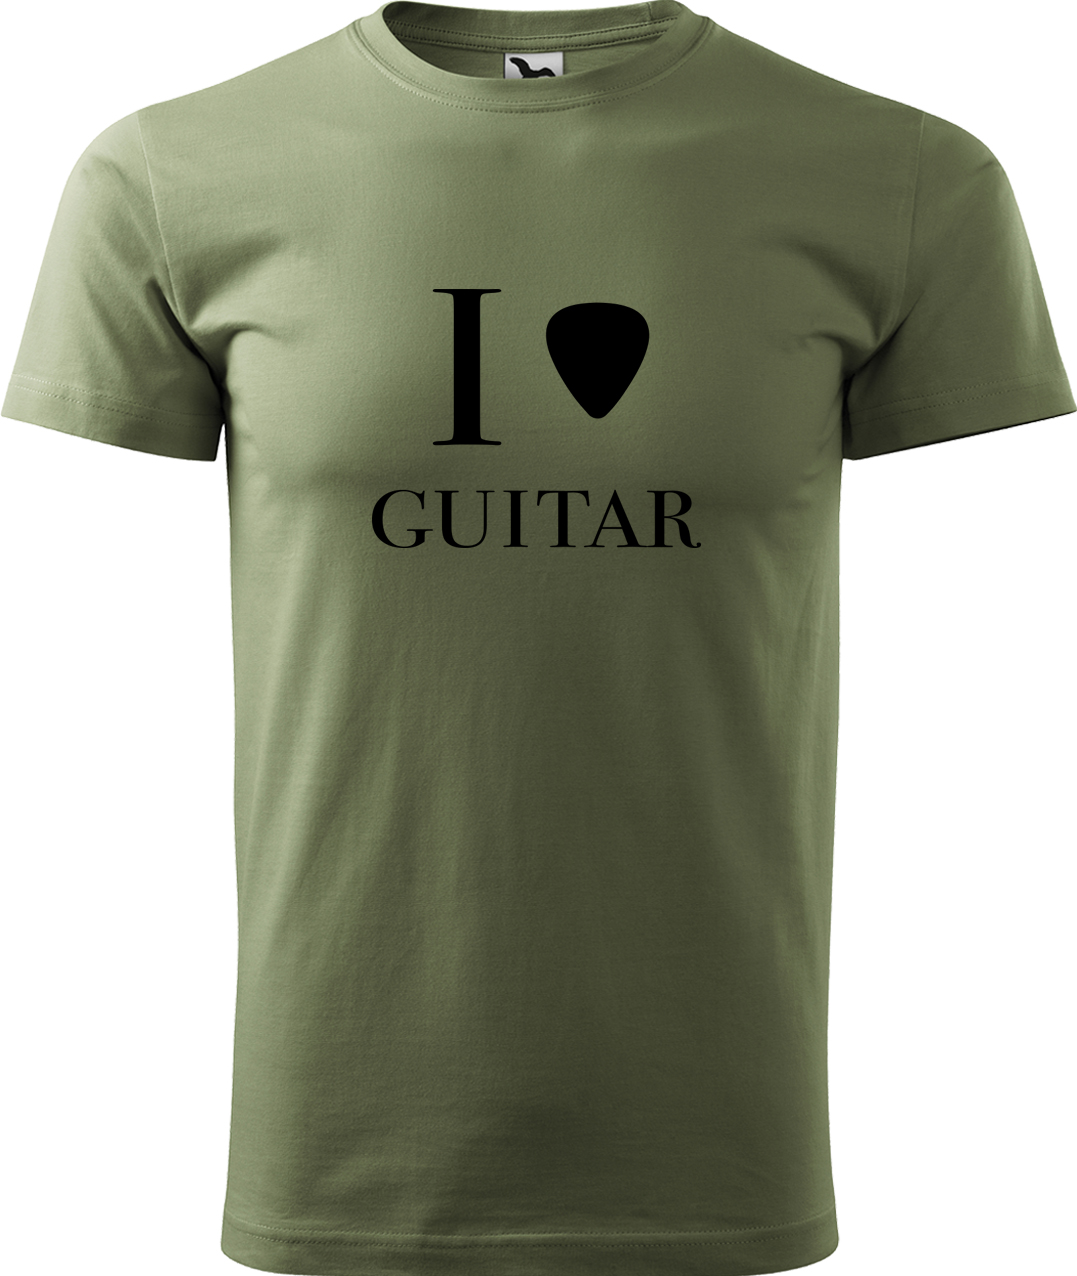 Pánské tričko s kytarou - I love guitar Velikost: S, Barva: Světlá khaki (28), Střih: pánský